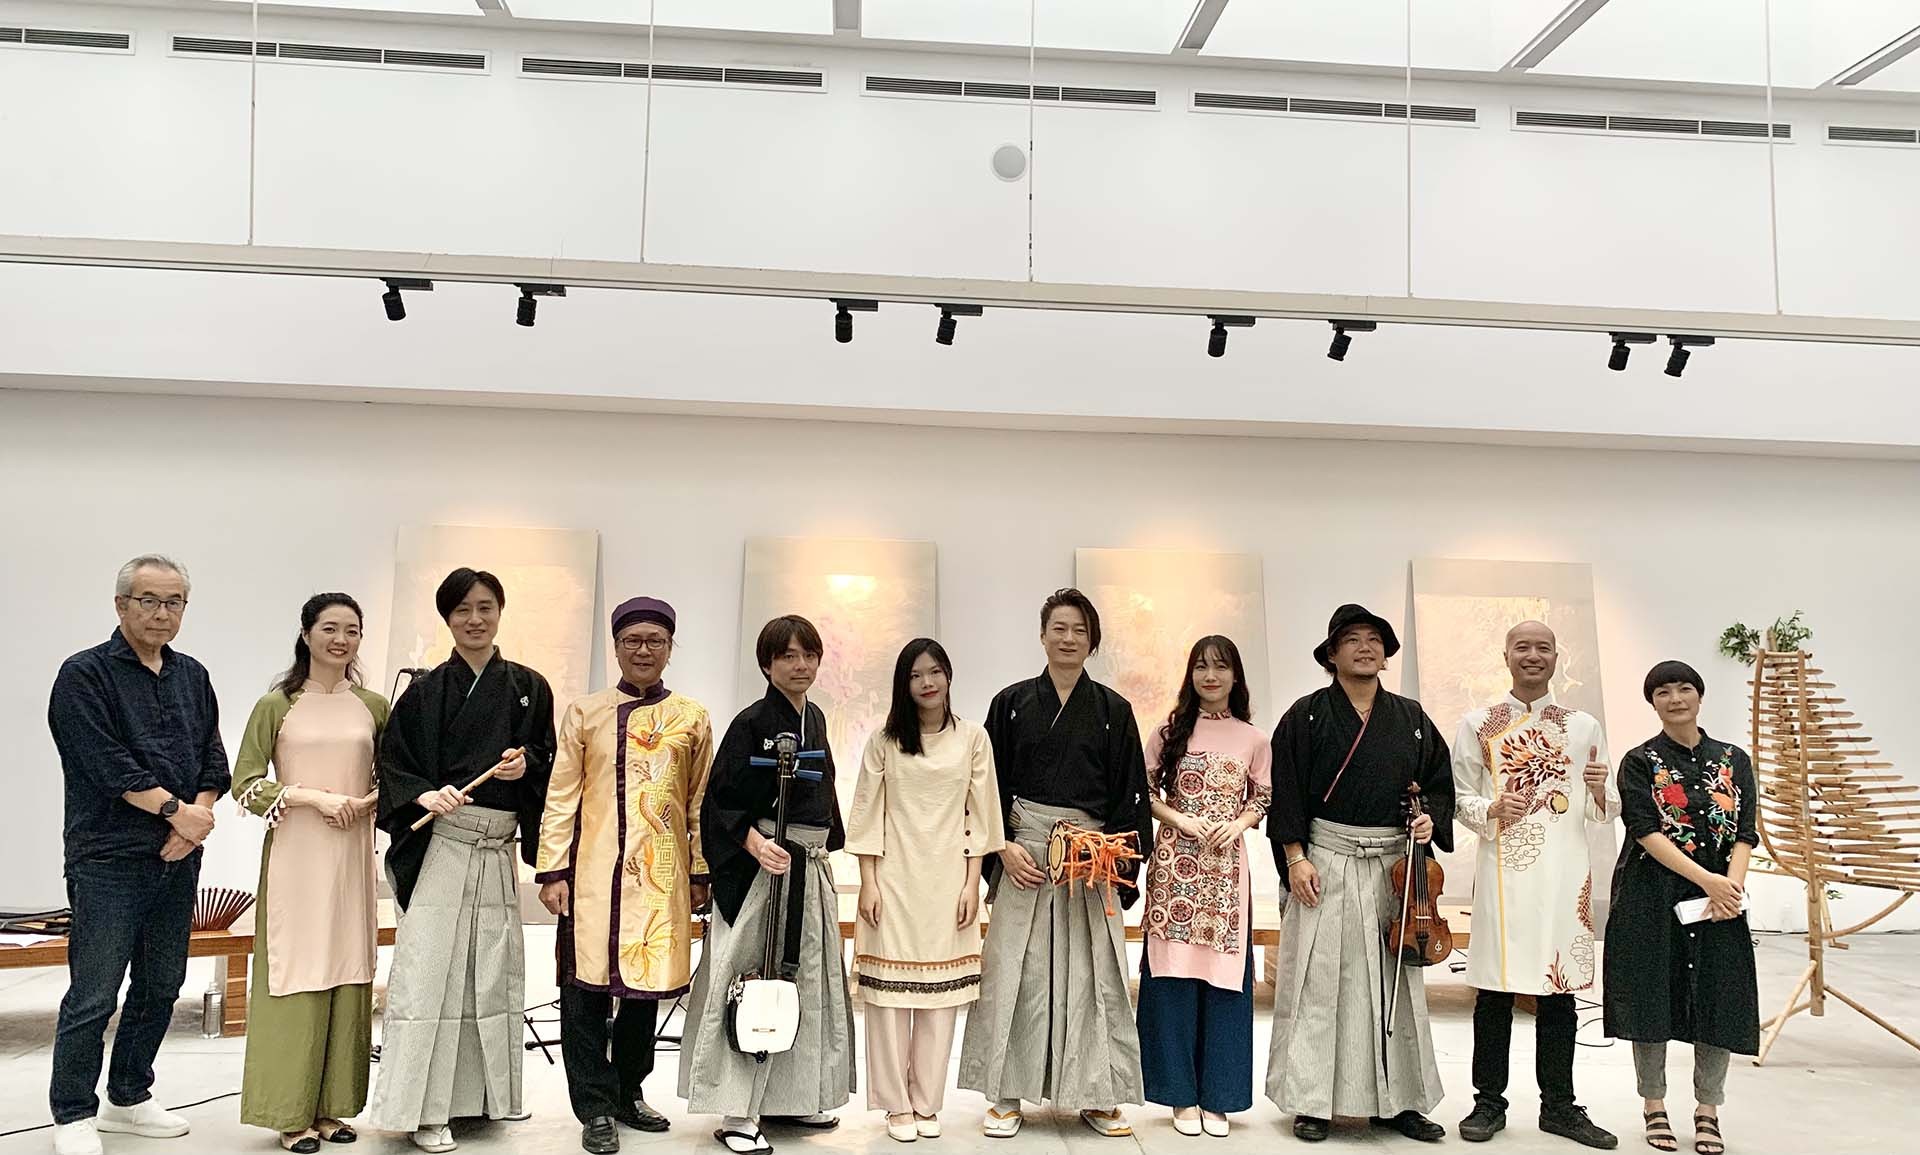 Dàn nhạc Sức Sống Mới biểu diễn giao lưu với ban nhạc truyền thống Nhật Bản Ryoma Quarte.  (Ảnh: Trọng Vũ)